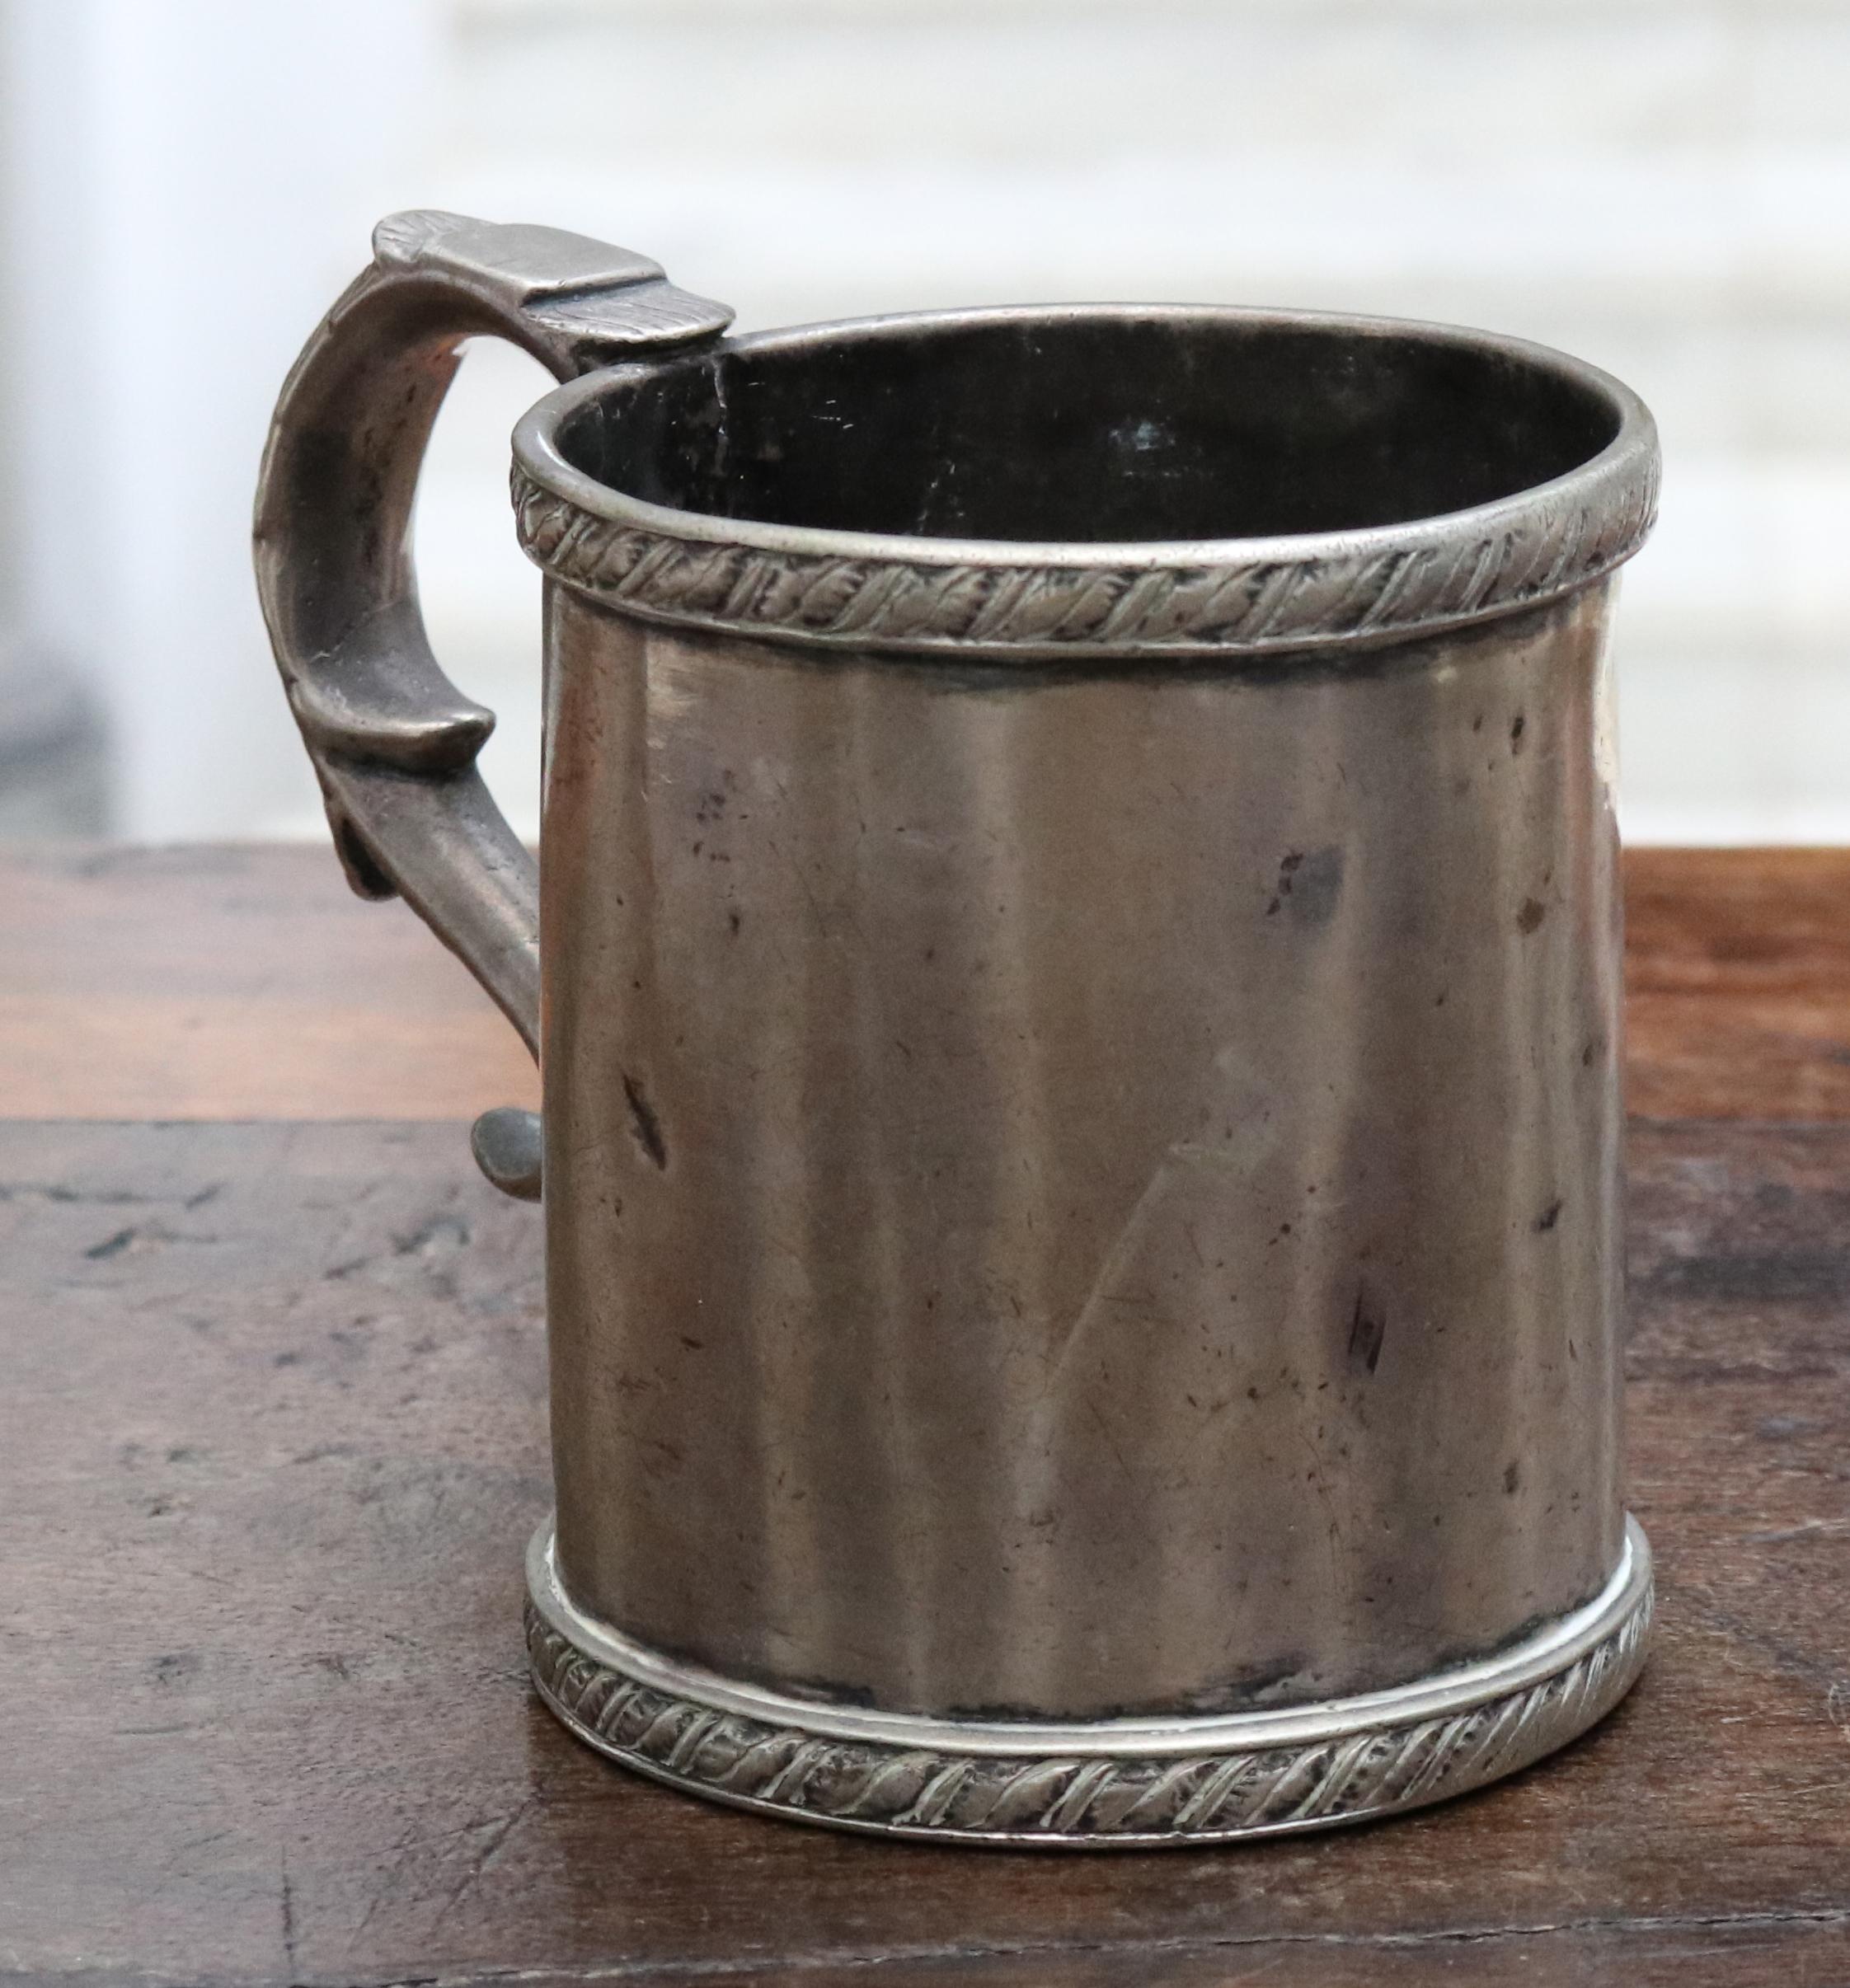 zylinderförmiger Silberbecher mit Henkel aus dem 18. bis 19. Jahrhundert, möglicherweise aus Bolivien. 

Gesamtgewicht des Silbers: 410 g.